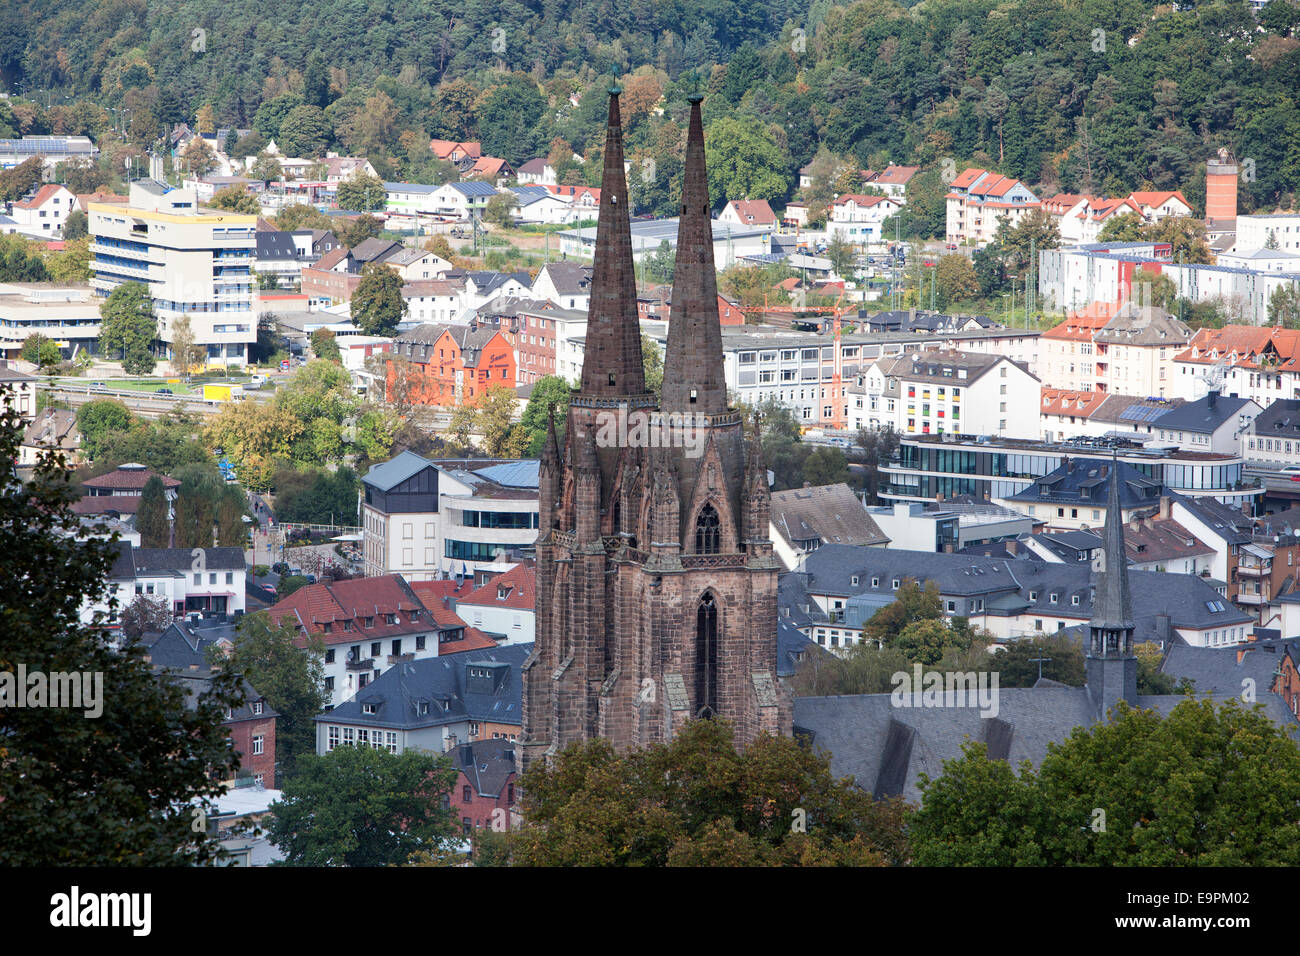 Affacciato sui tetti del centro storico, Marburg, Hesse, Germania, Europa Foto Stock